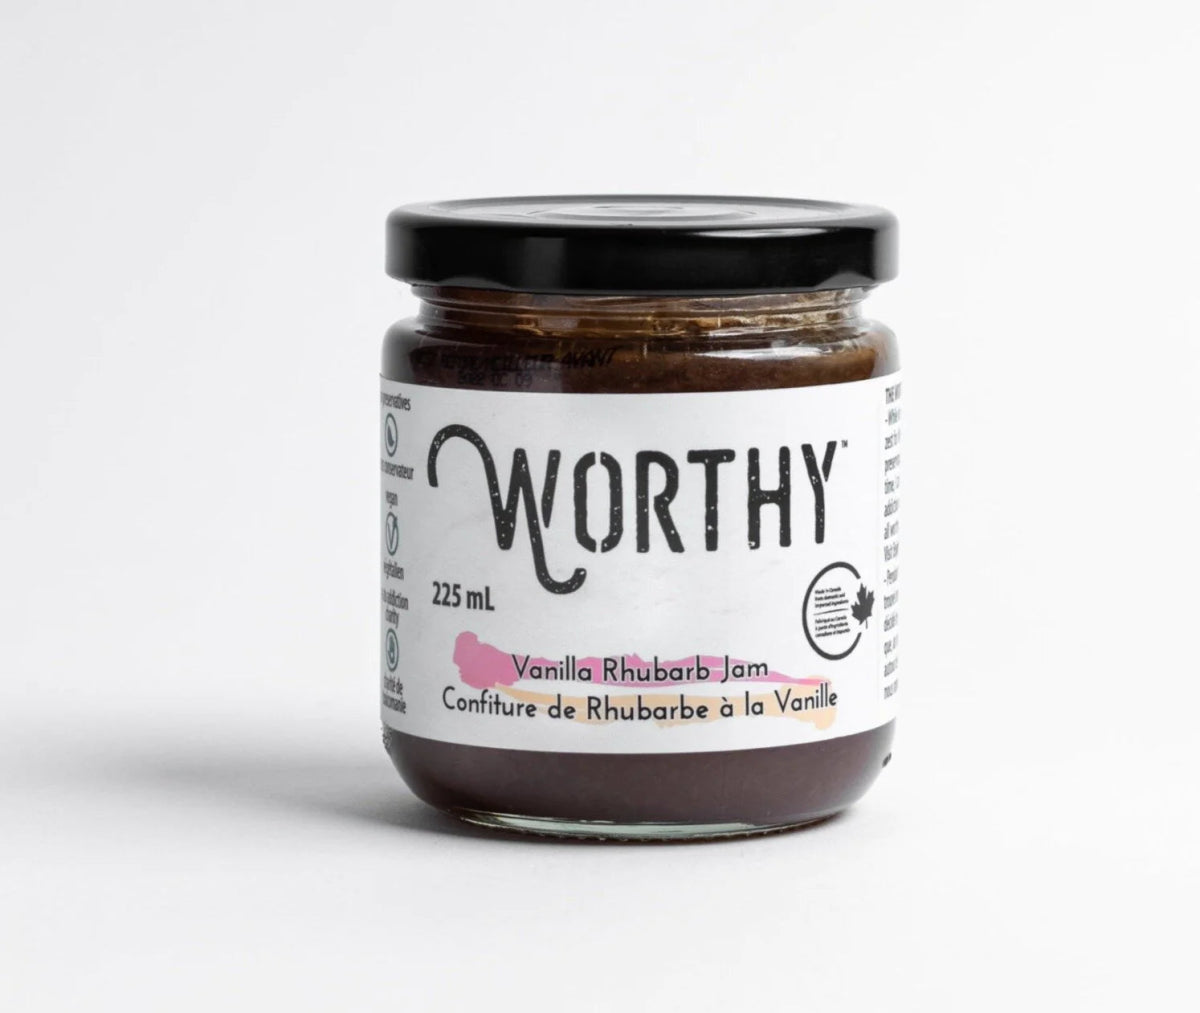 Vanilla Rhubarb Jam - 235mL Jar - Oonnie - Worthy Jams